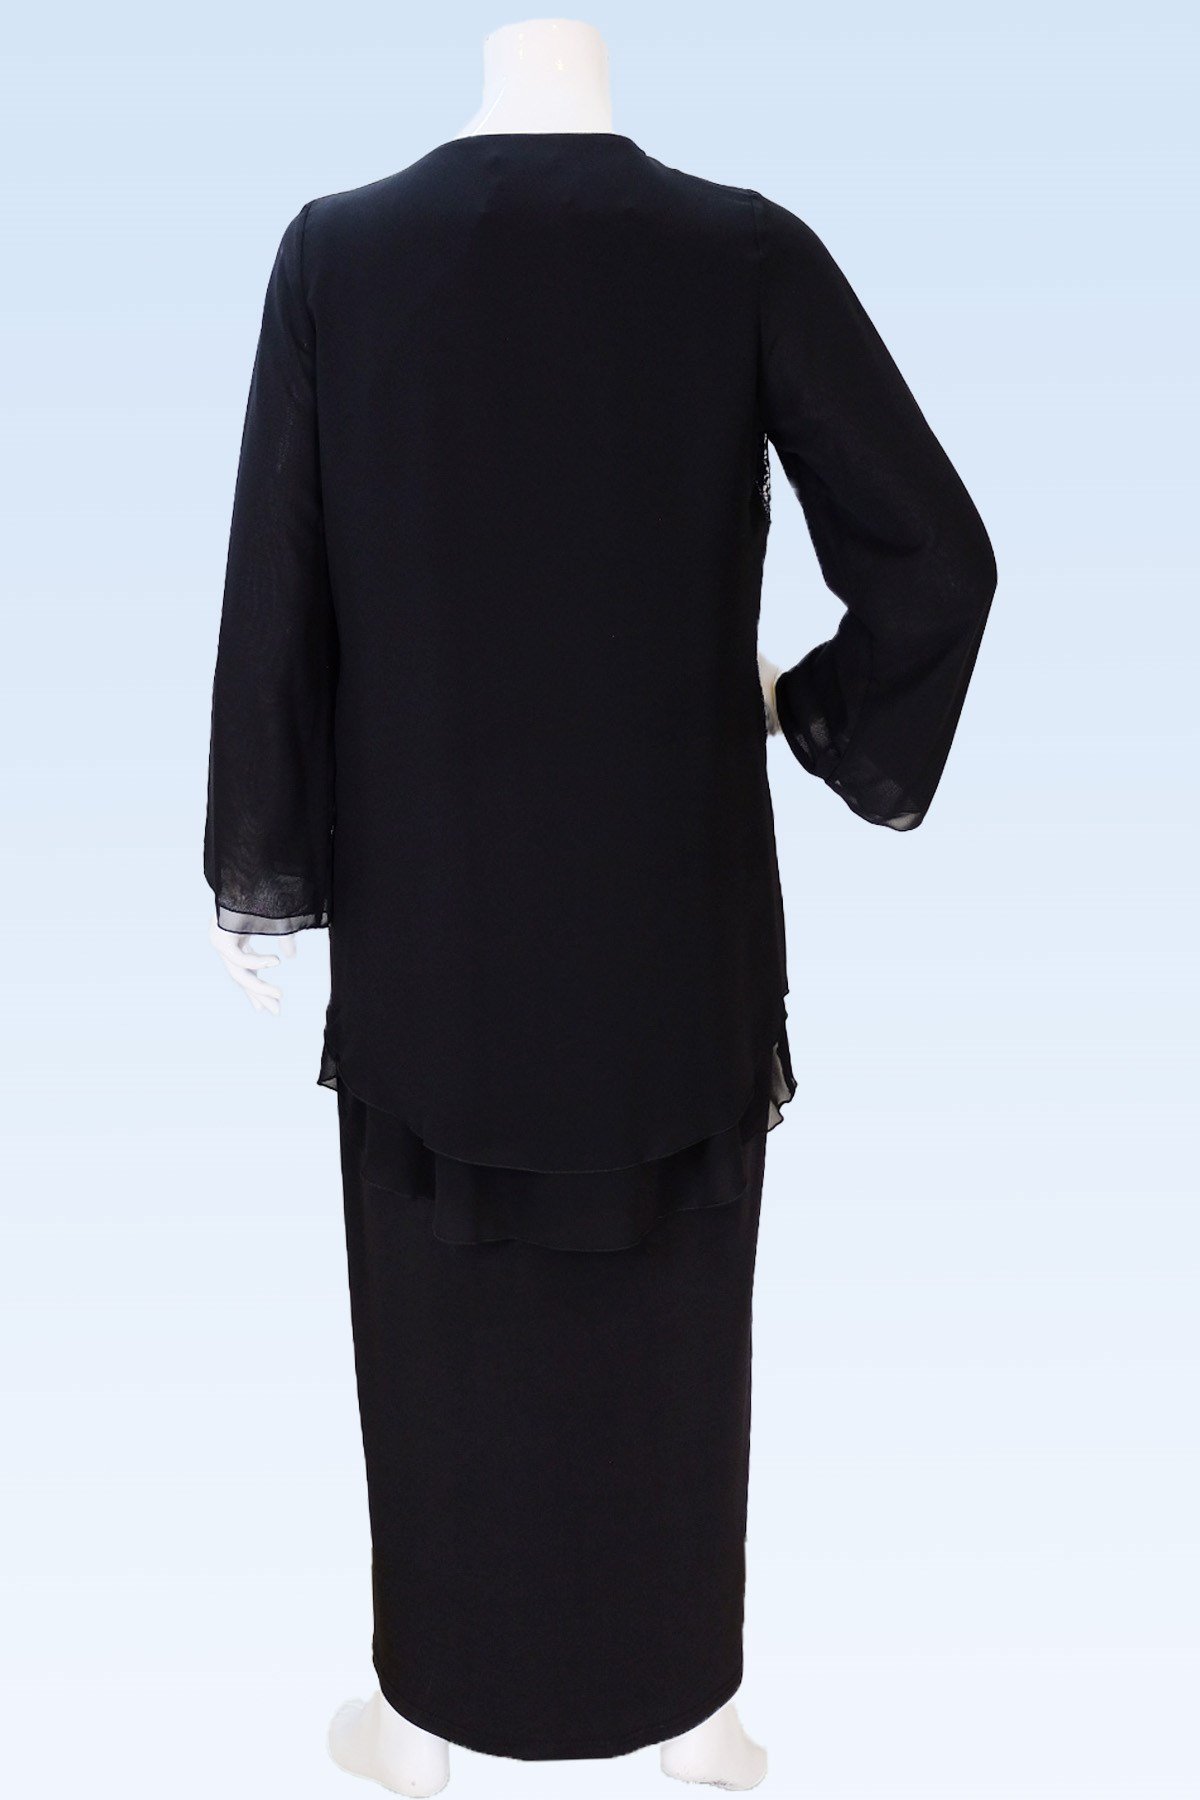 42893 - Femina Abiye Elbise Modelleri